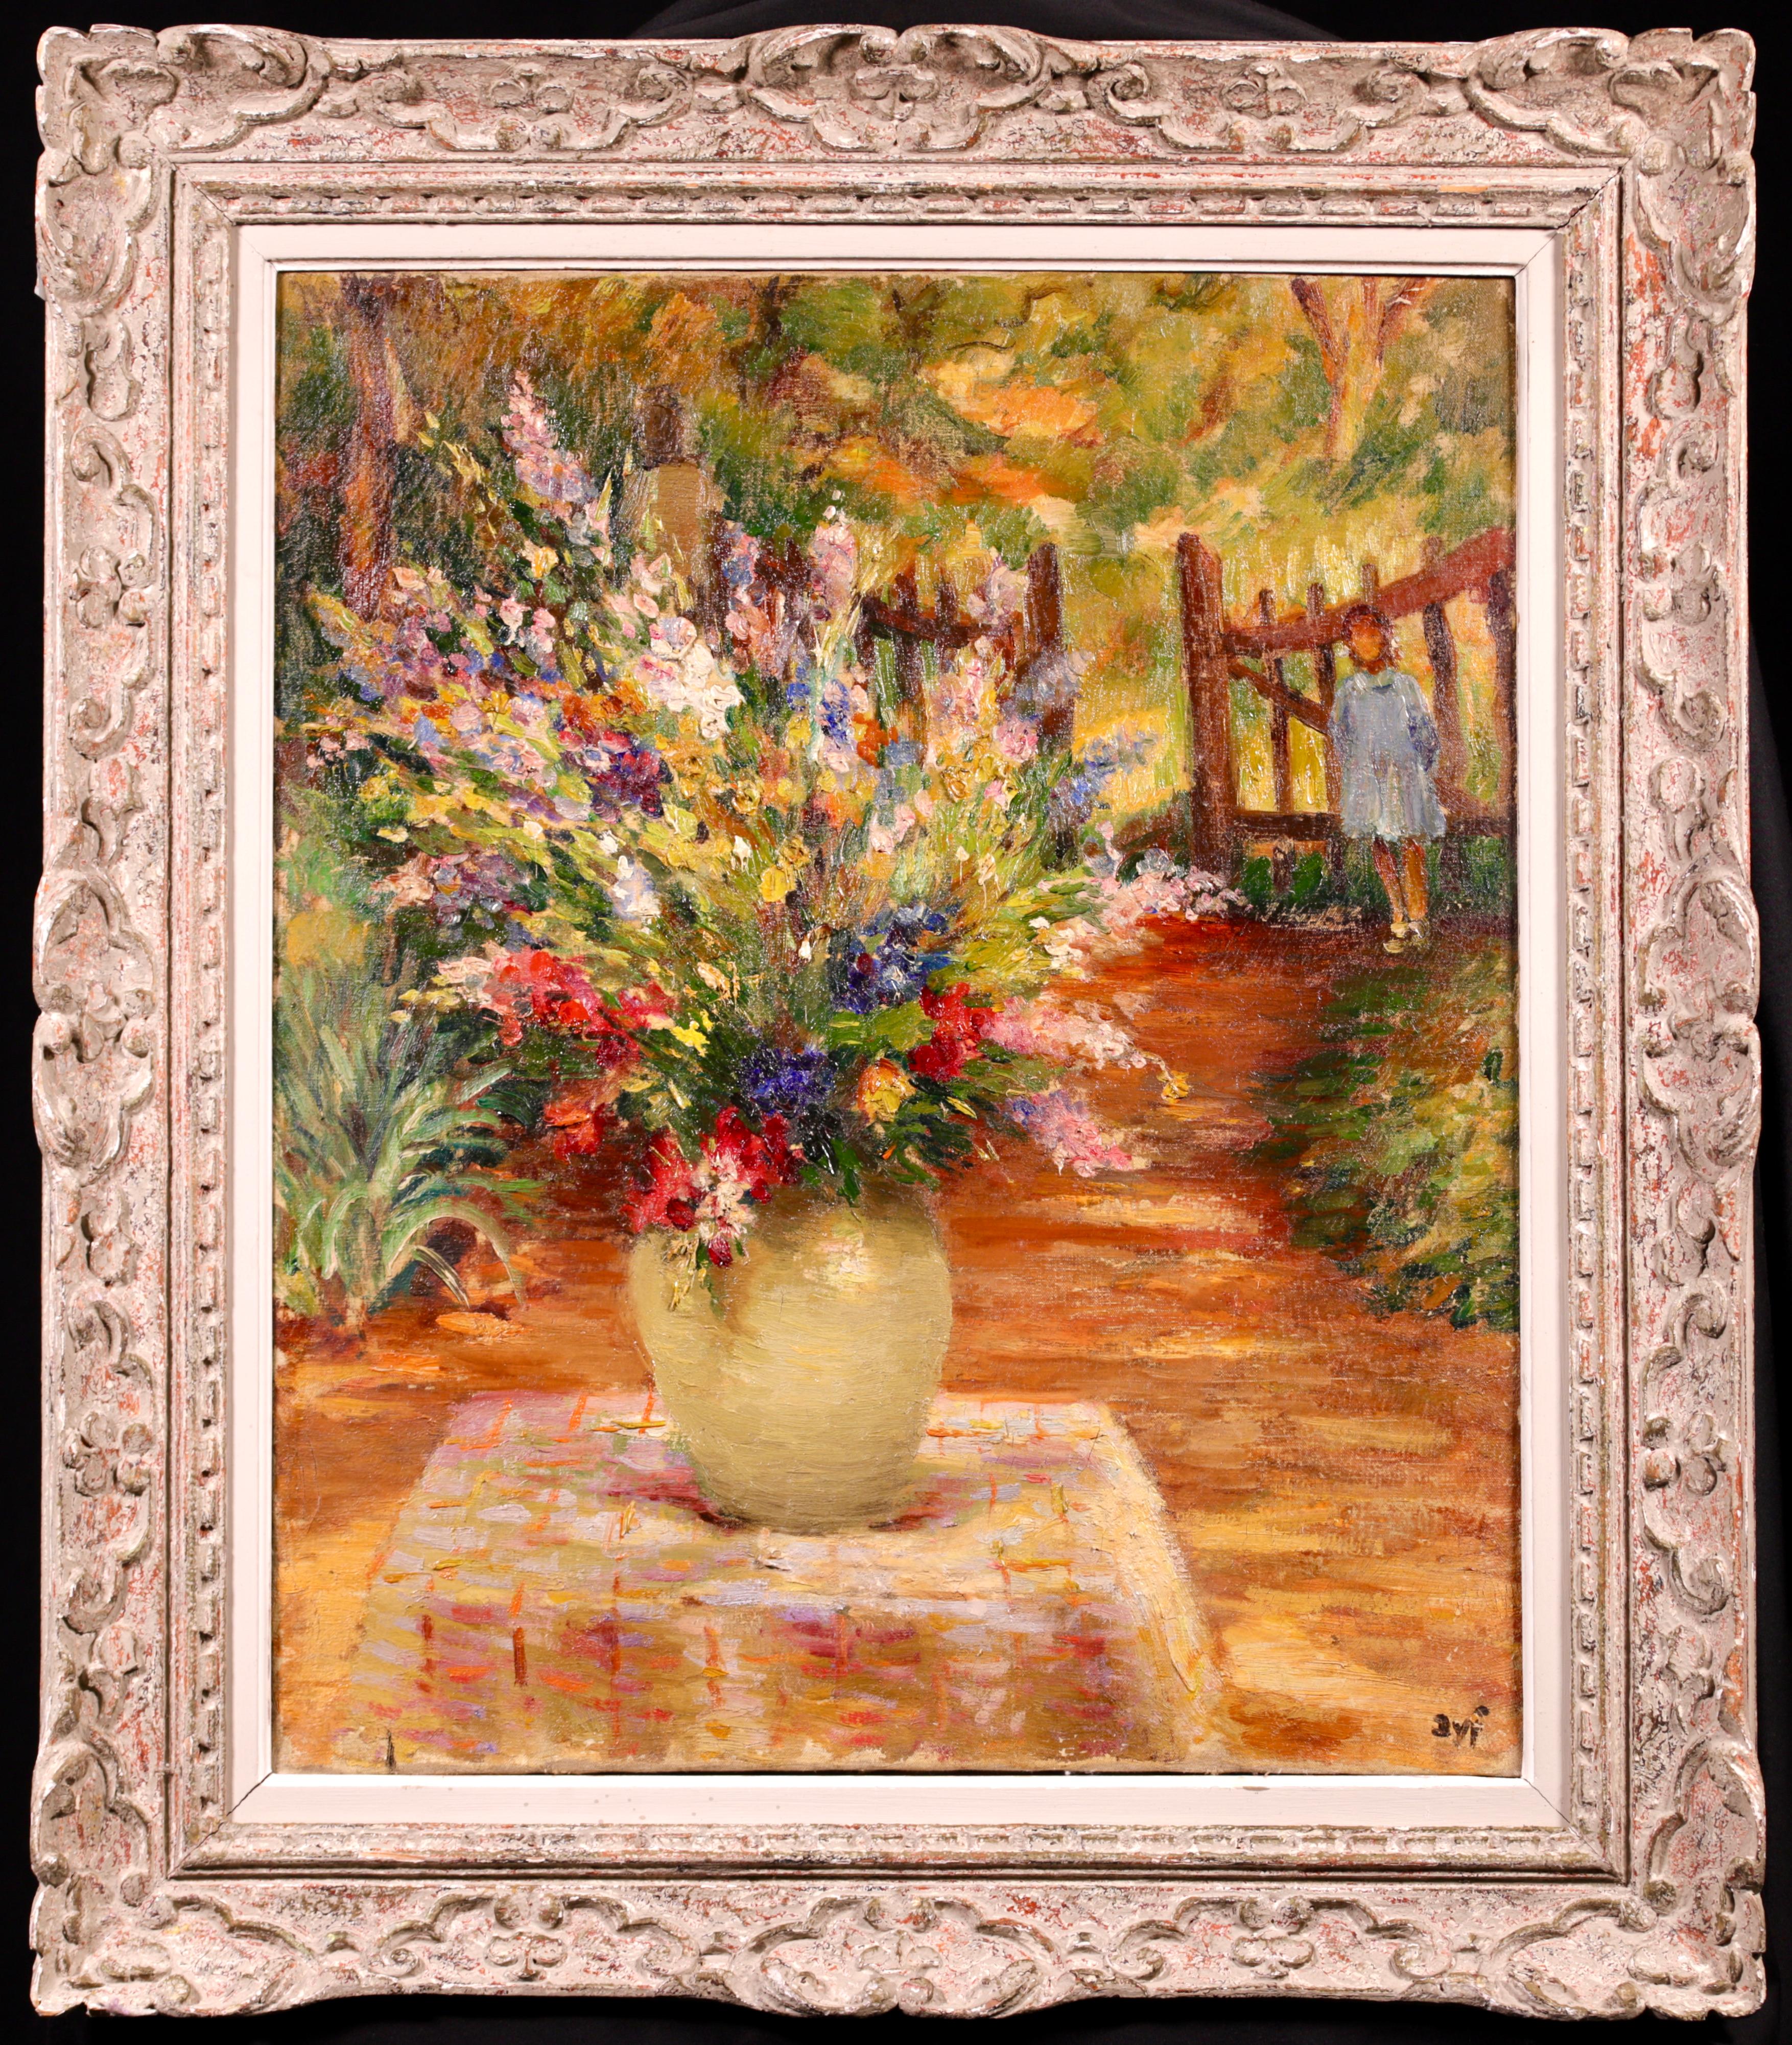 Nature morte post impressionniste signée, huile sur toile circa 1940 du peintre impressionniste français Marcel Dyf. L'œuvre représente un vase rempli de fleurs de toutes les couleurs posé sur une table dans un jardin. Au loin, une jeune fille vêtue